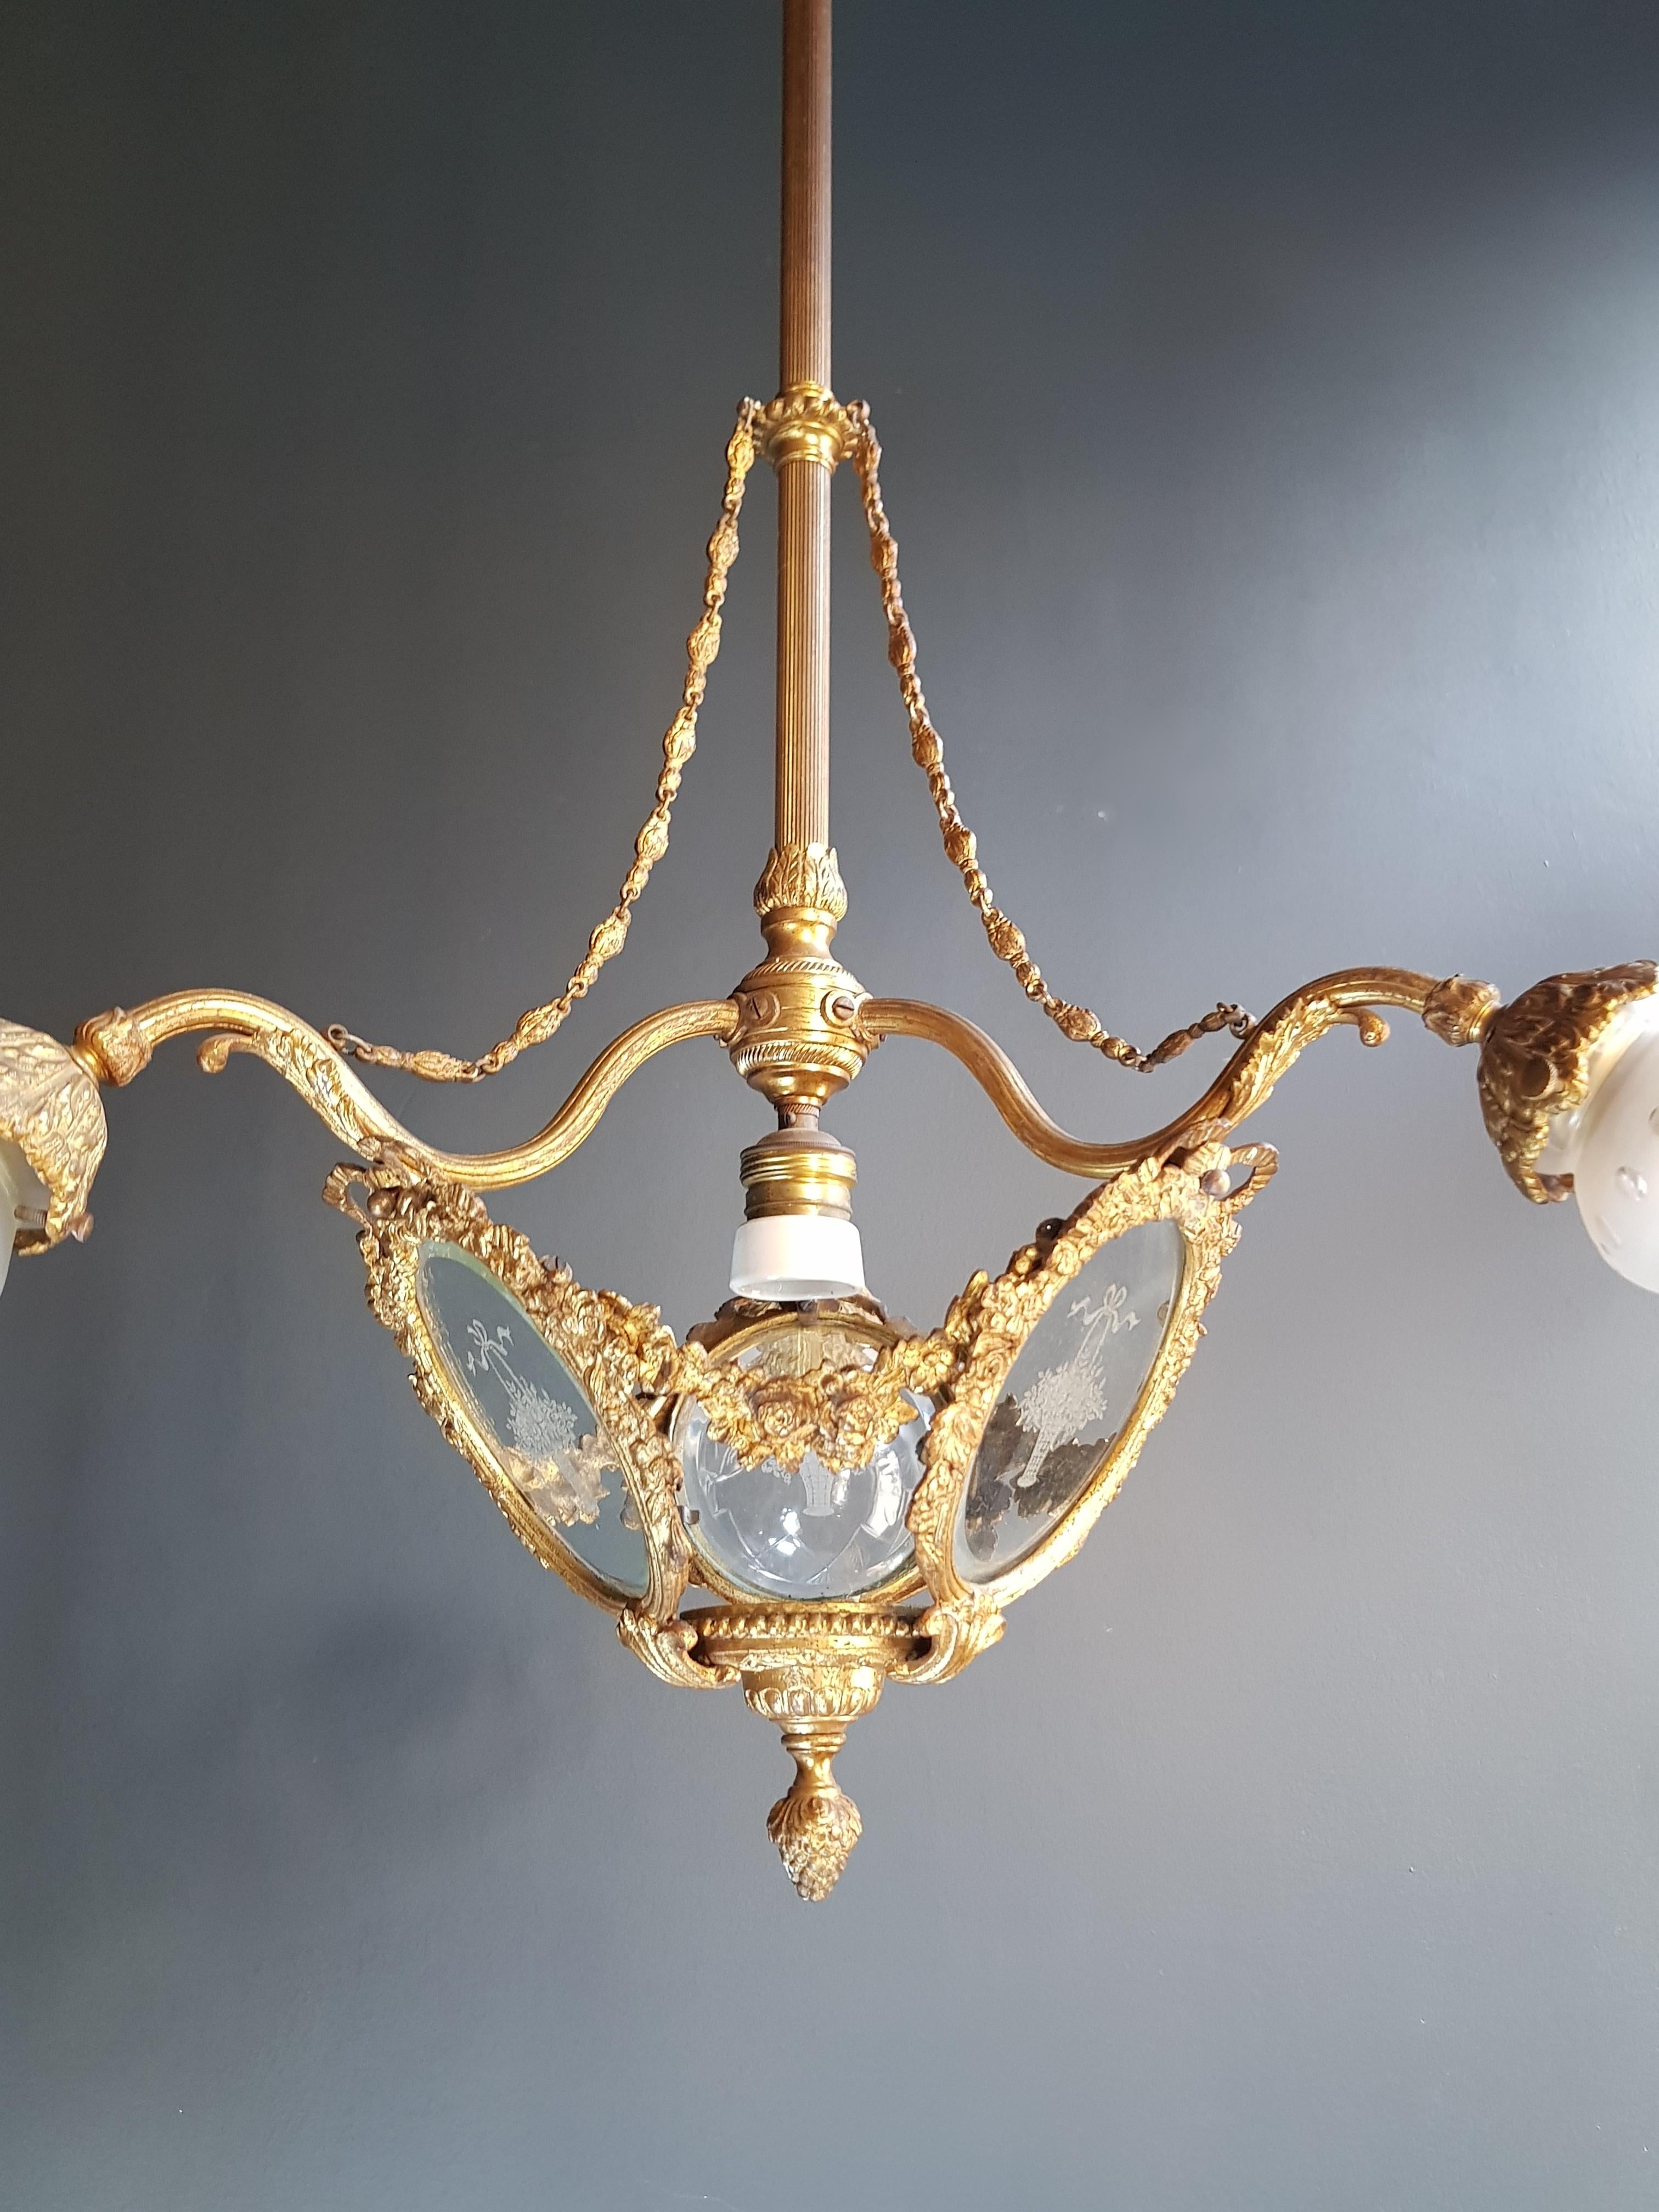 rarity chandelier